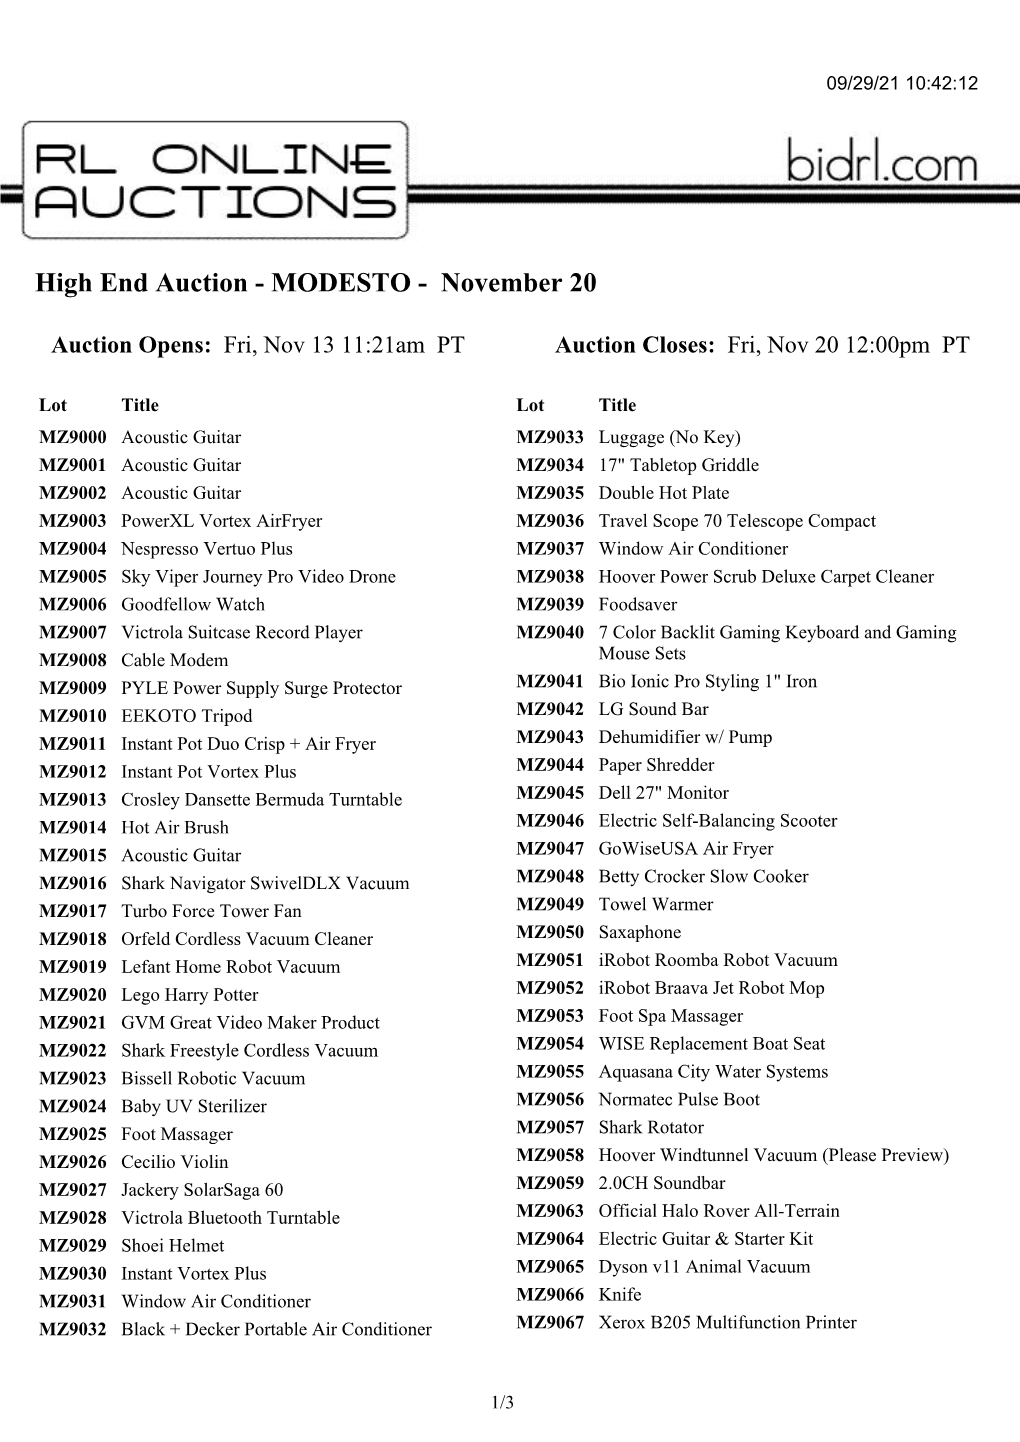 High End Auction - MODESTO - November 20